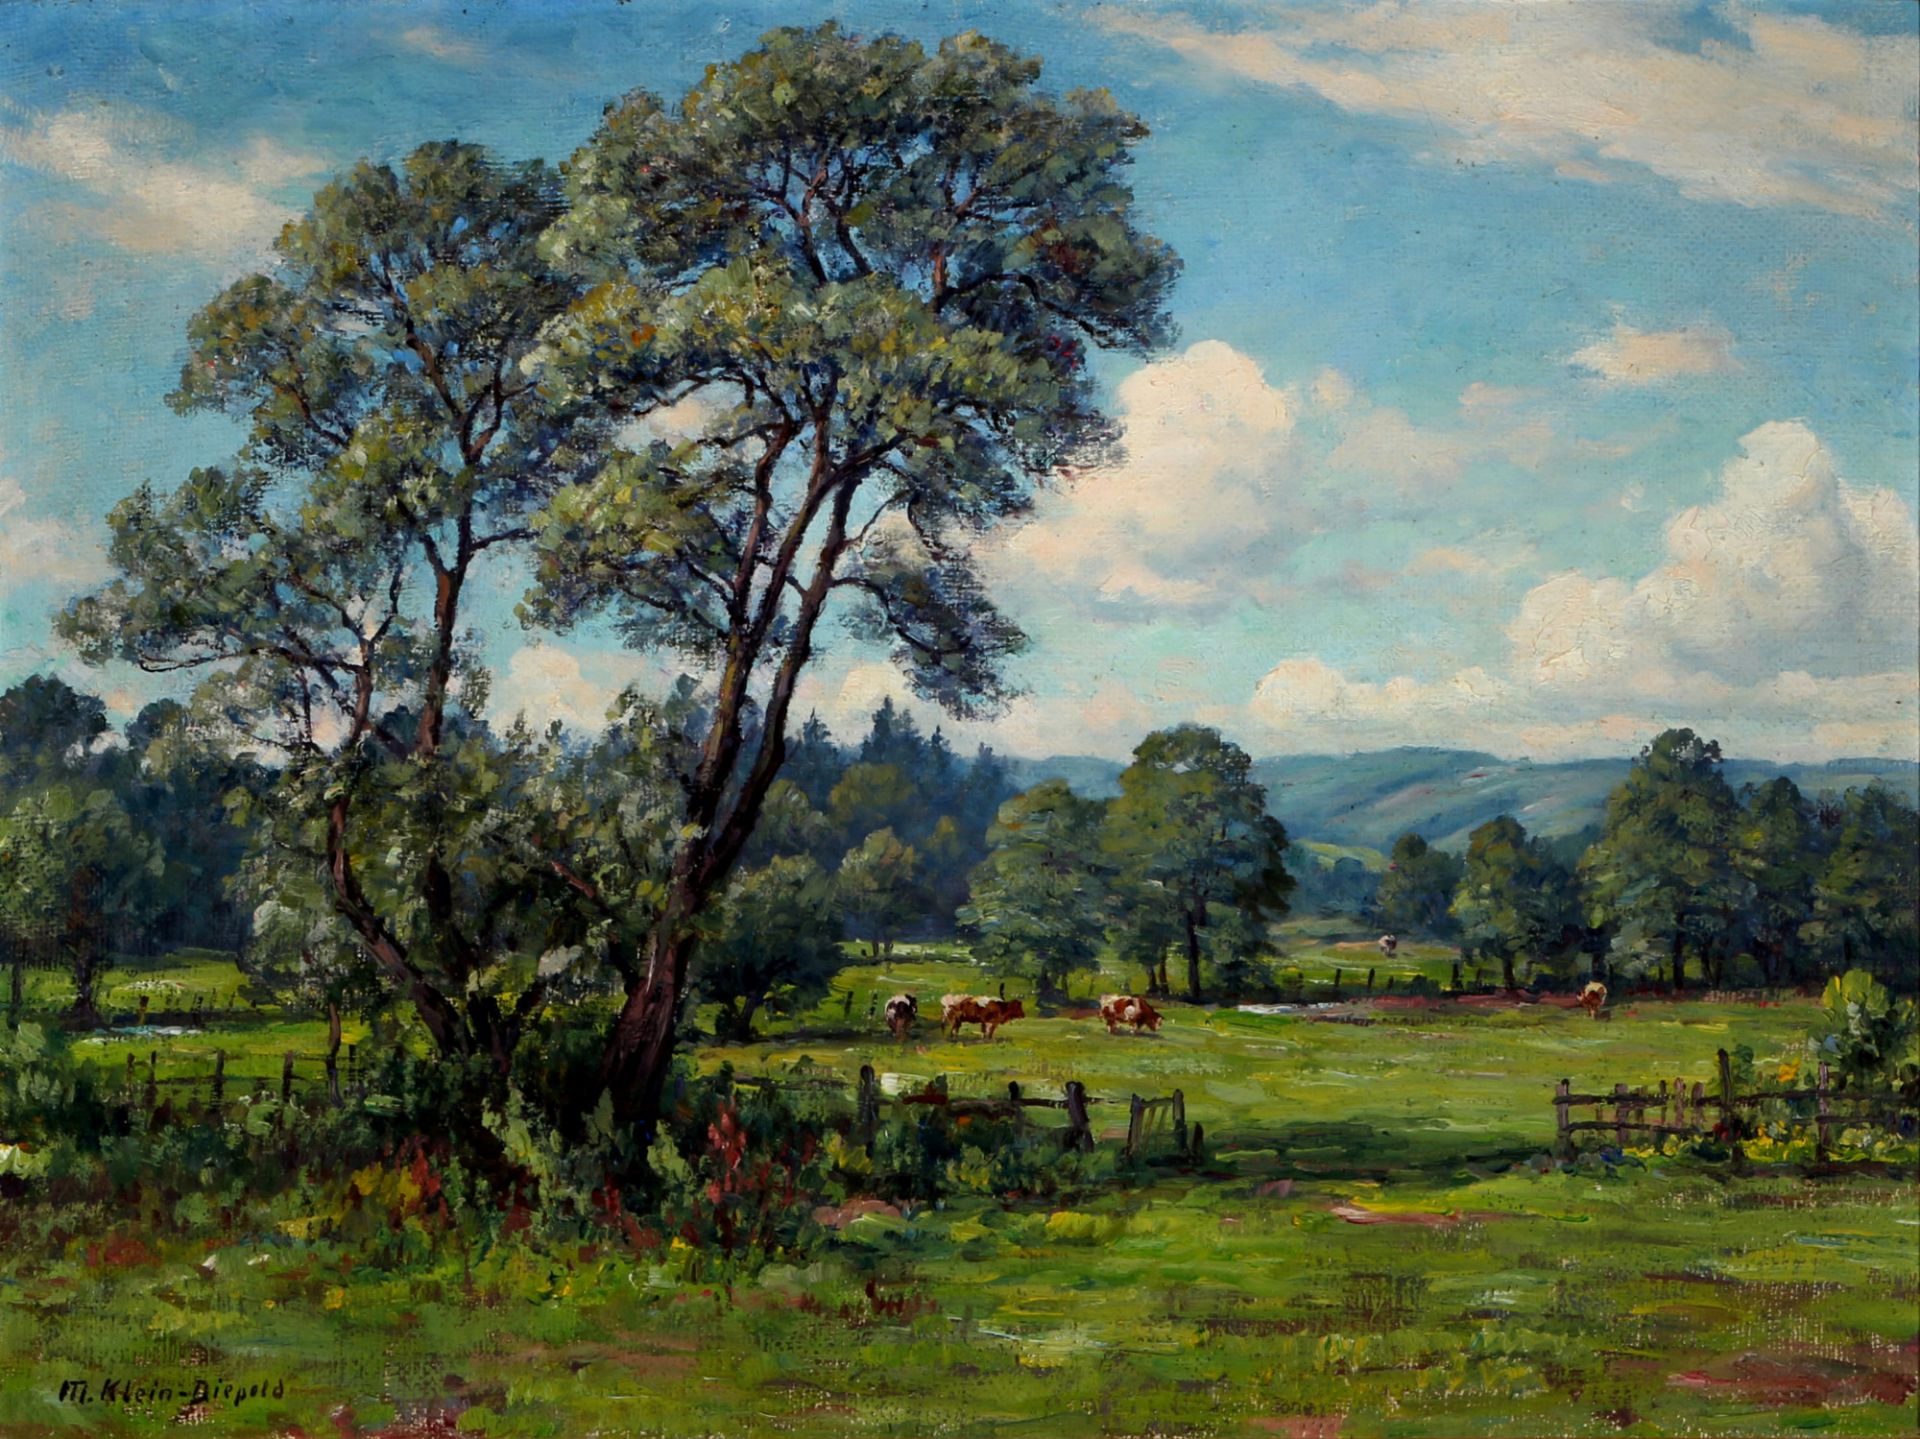 Maximilian Klein von Diepold (1873-1949) grasende Kühe in Weidelandschaft, grazing cows pasture land